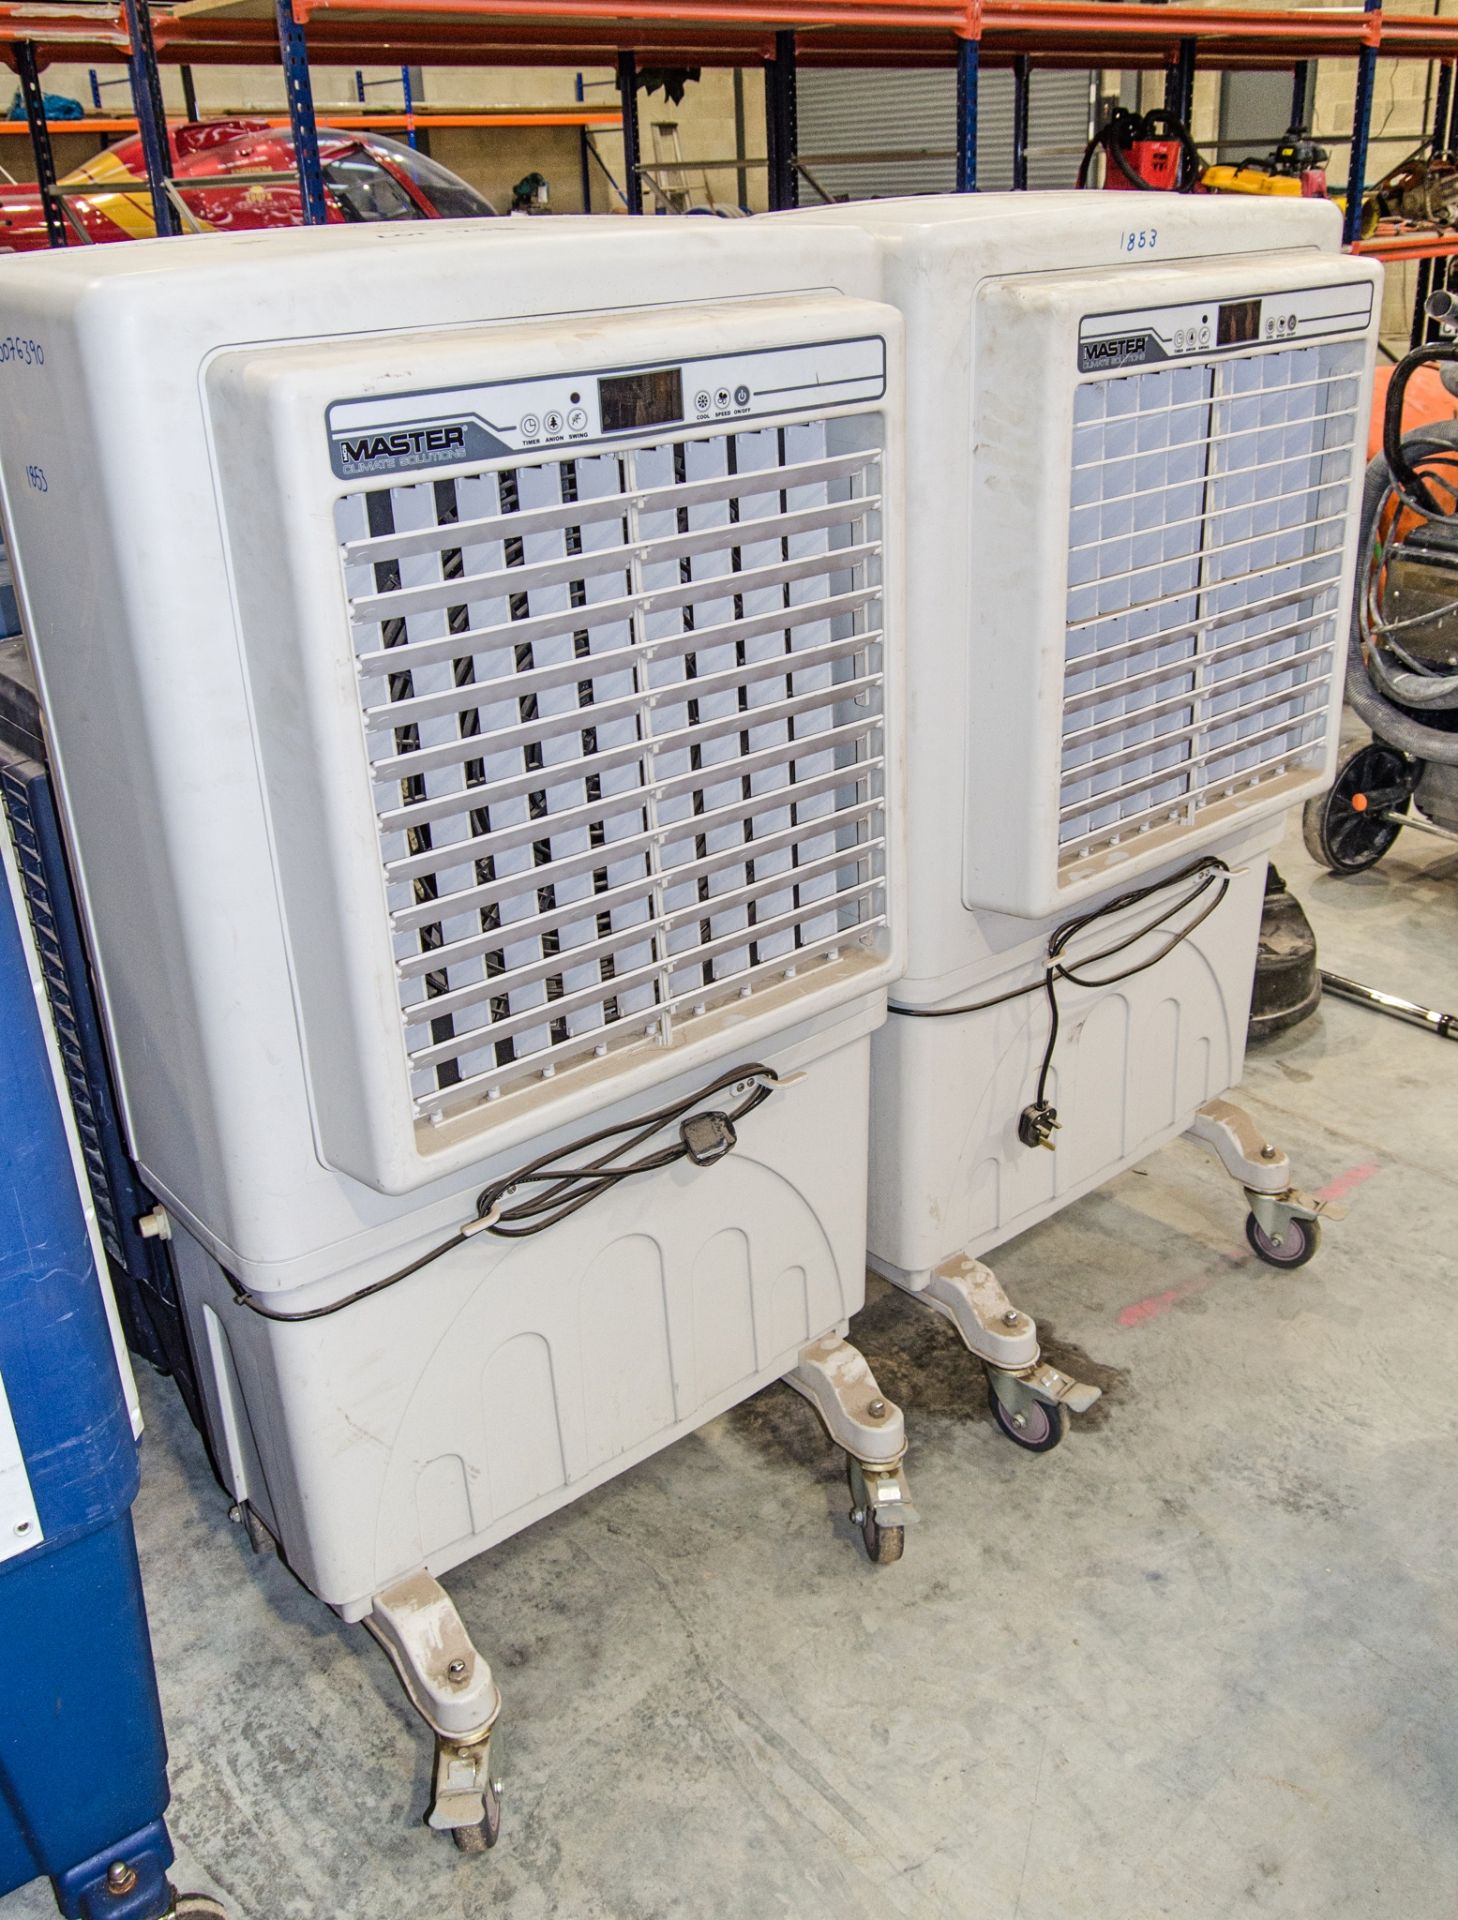 2 - Master 240v evaporative coolers